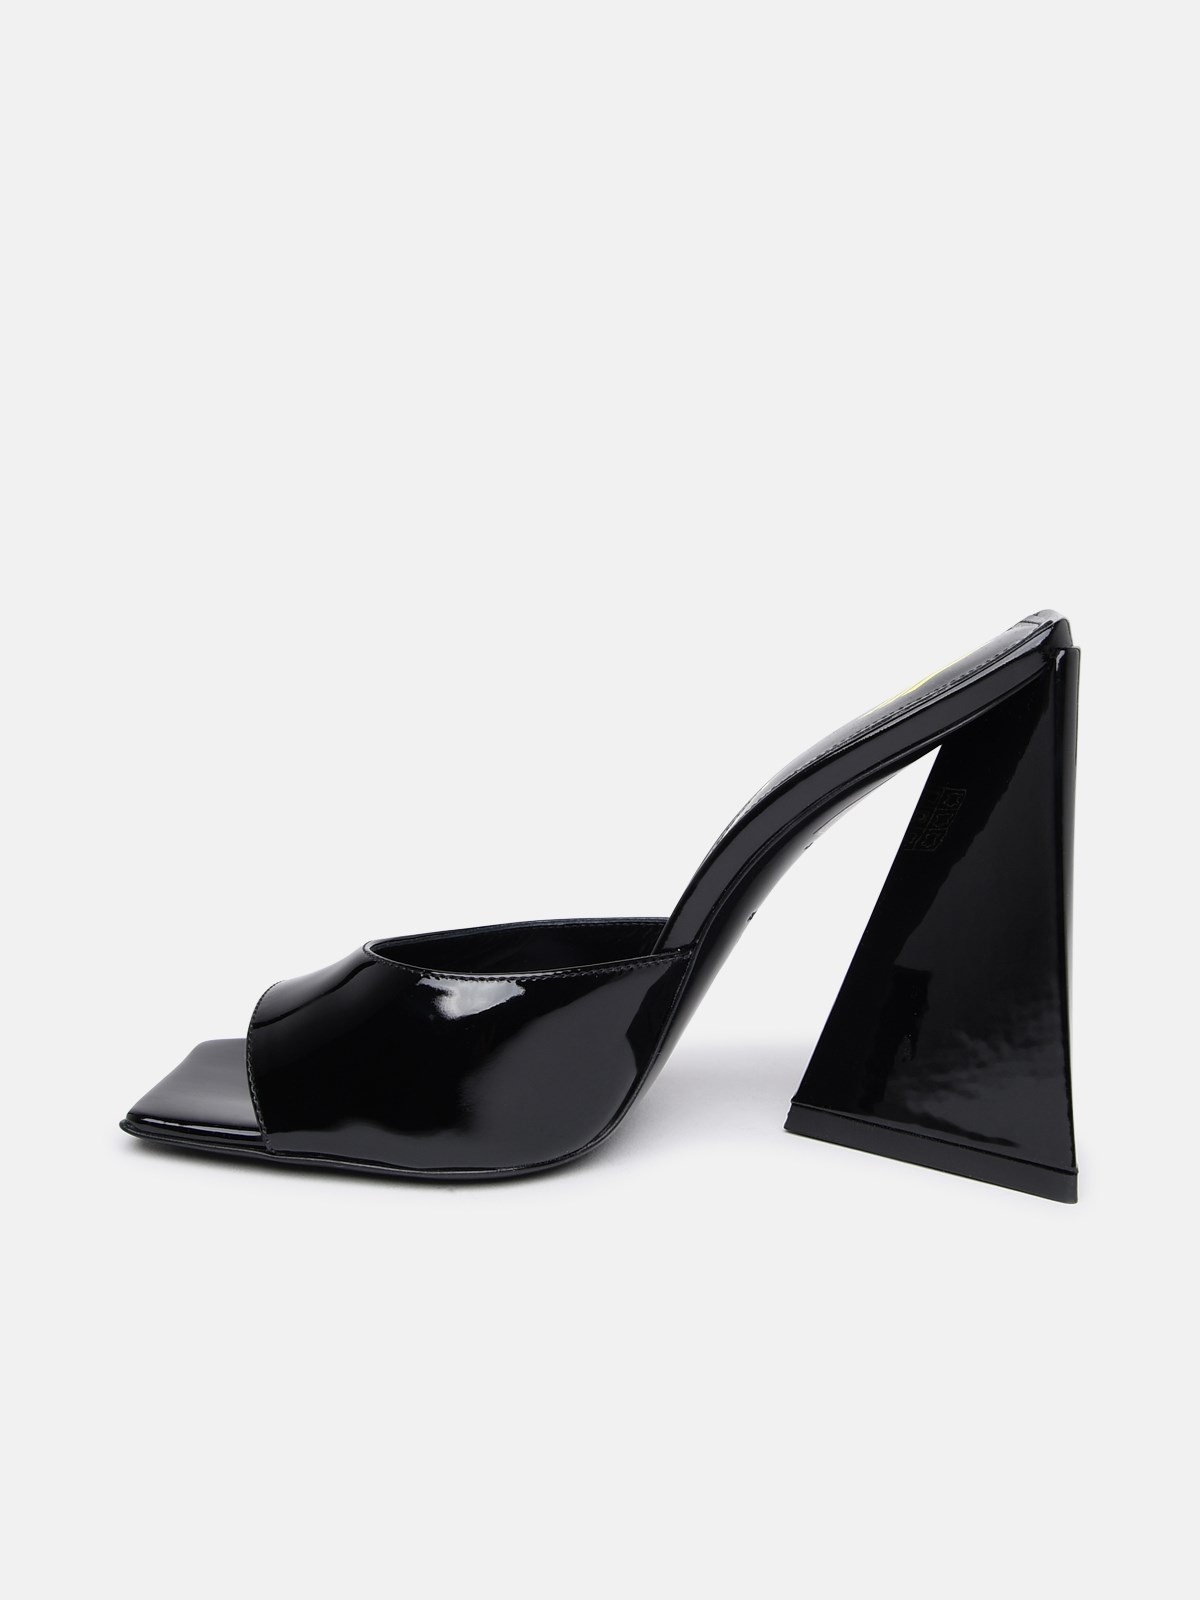 Devon sandals in black leather - 3